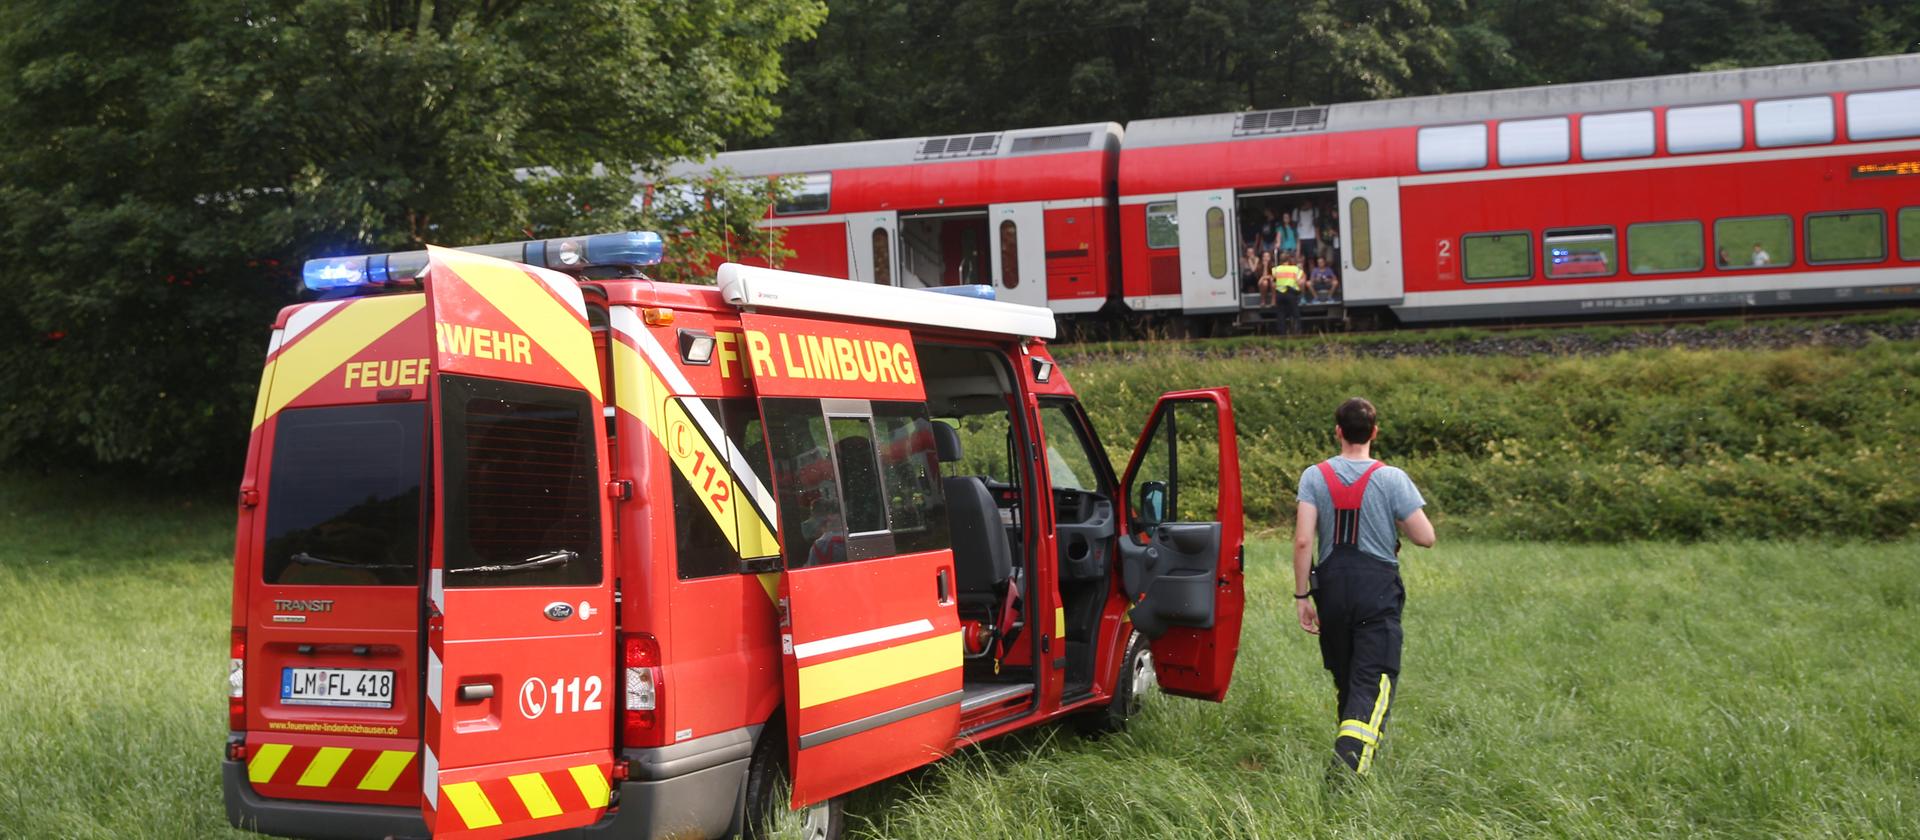 Von einem Baum gestoppt: Ein Regionalzug steht bei Niederbrechen auf freier Strecke. Feuerwehrleute aus Lindenholzhausen betreuen die Passagiere. Bild © hessenschau.de